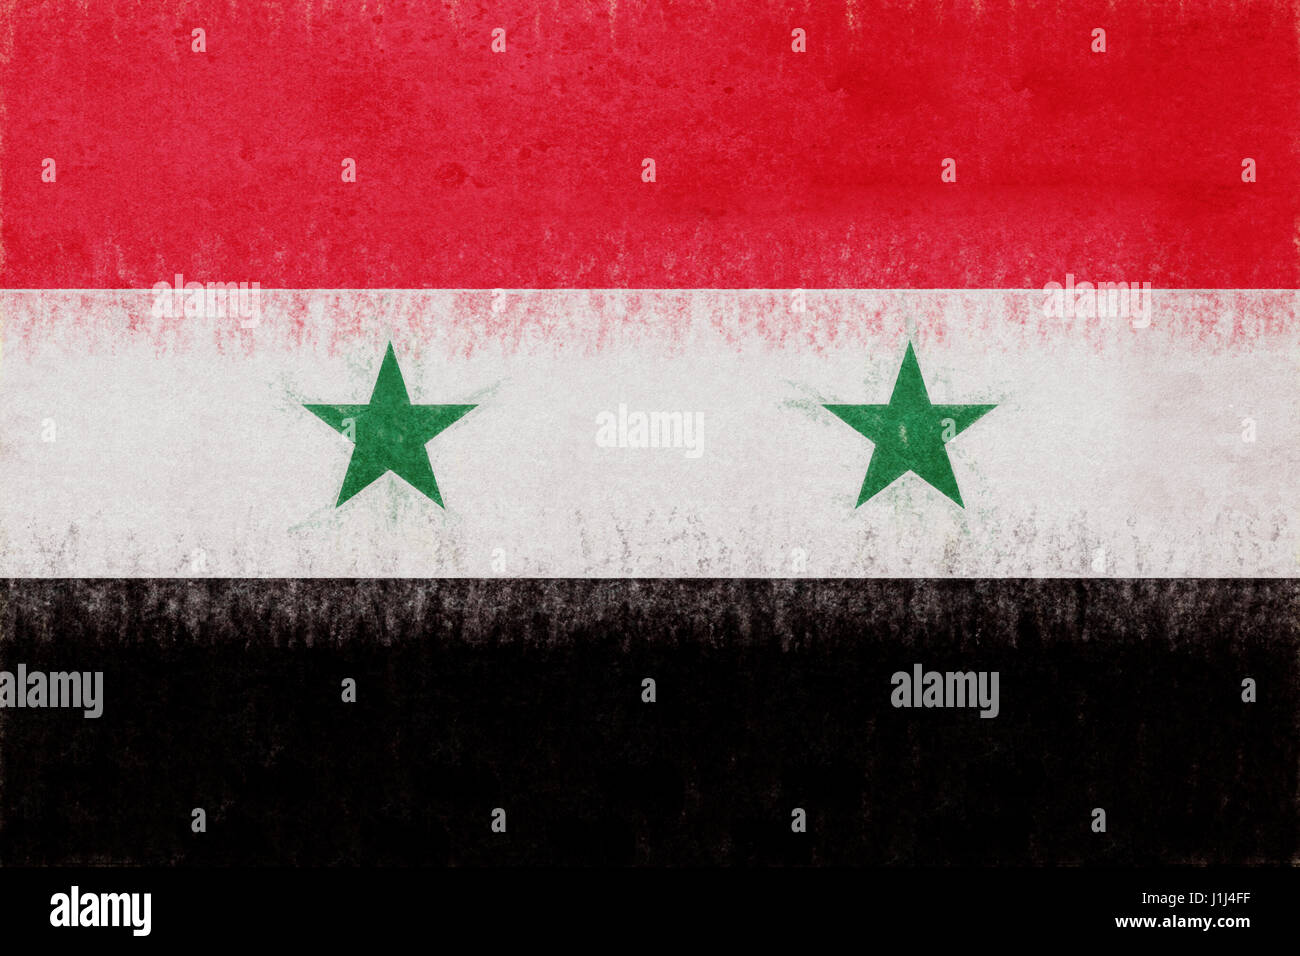 Abbildung der Flagge Syriens mit einem Grunge-Look. Stockfoto